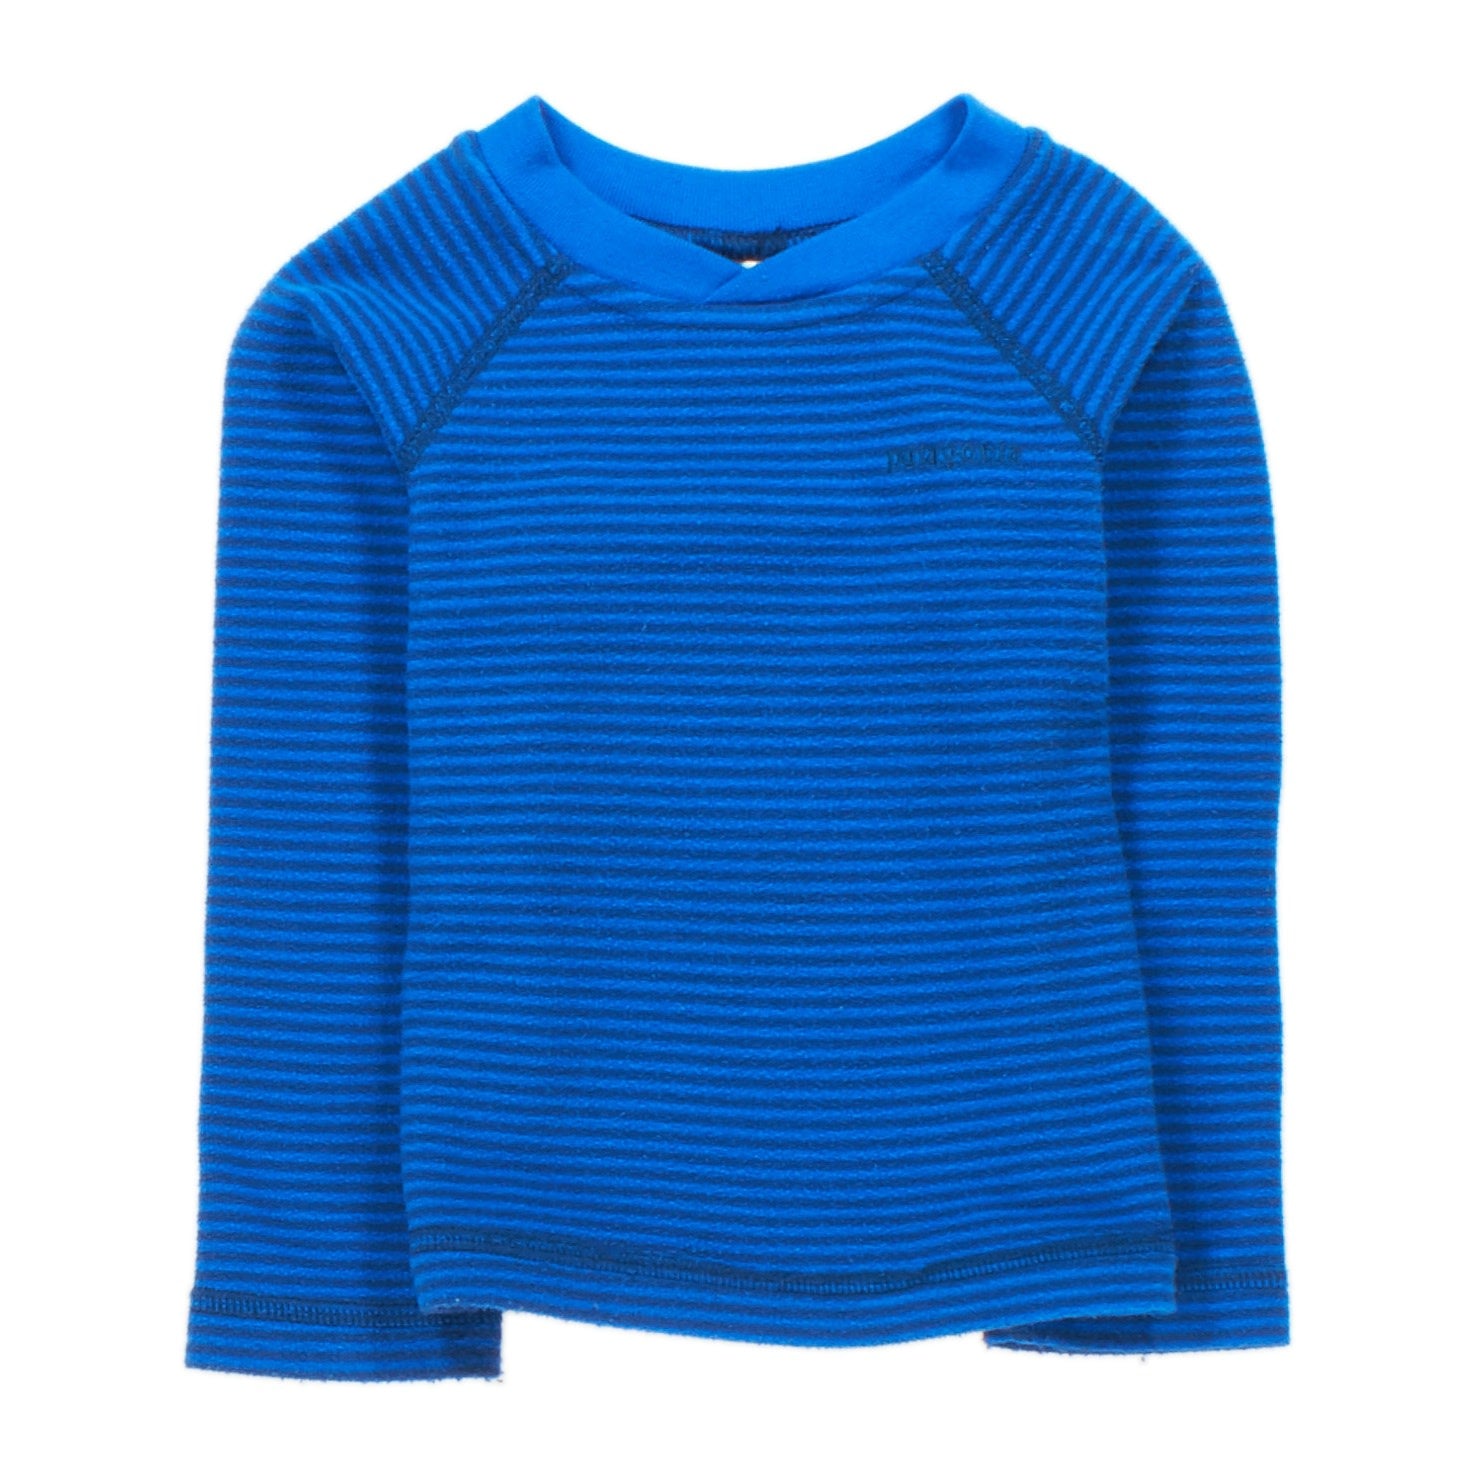 Kids' u0026 Baby Used Fleece Pullovers | Patagonia® Worn Wear – Patagonia Worn  Wear®